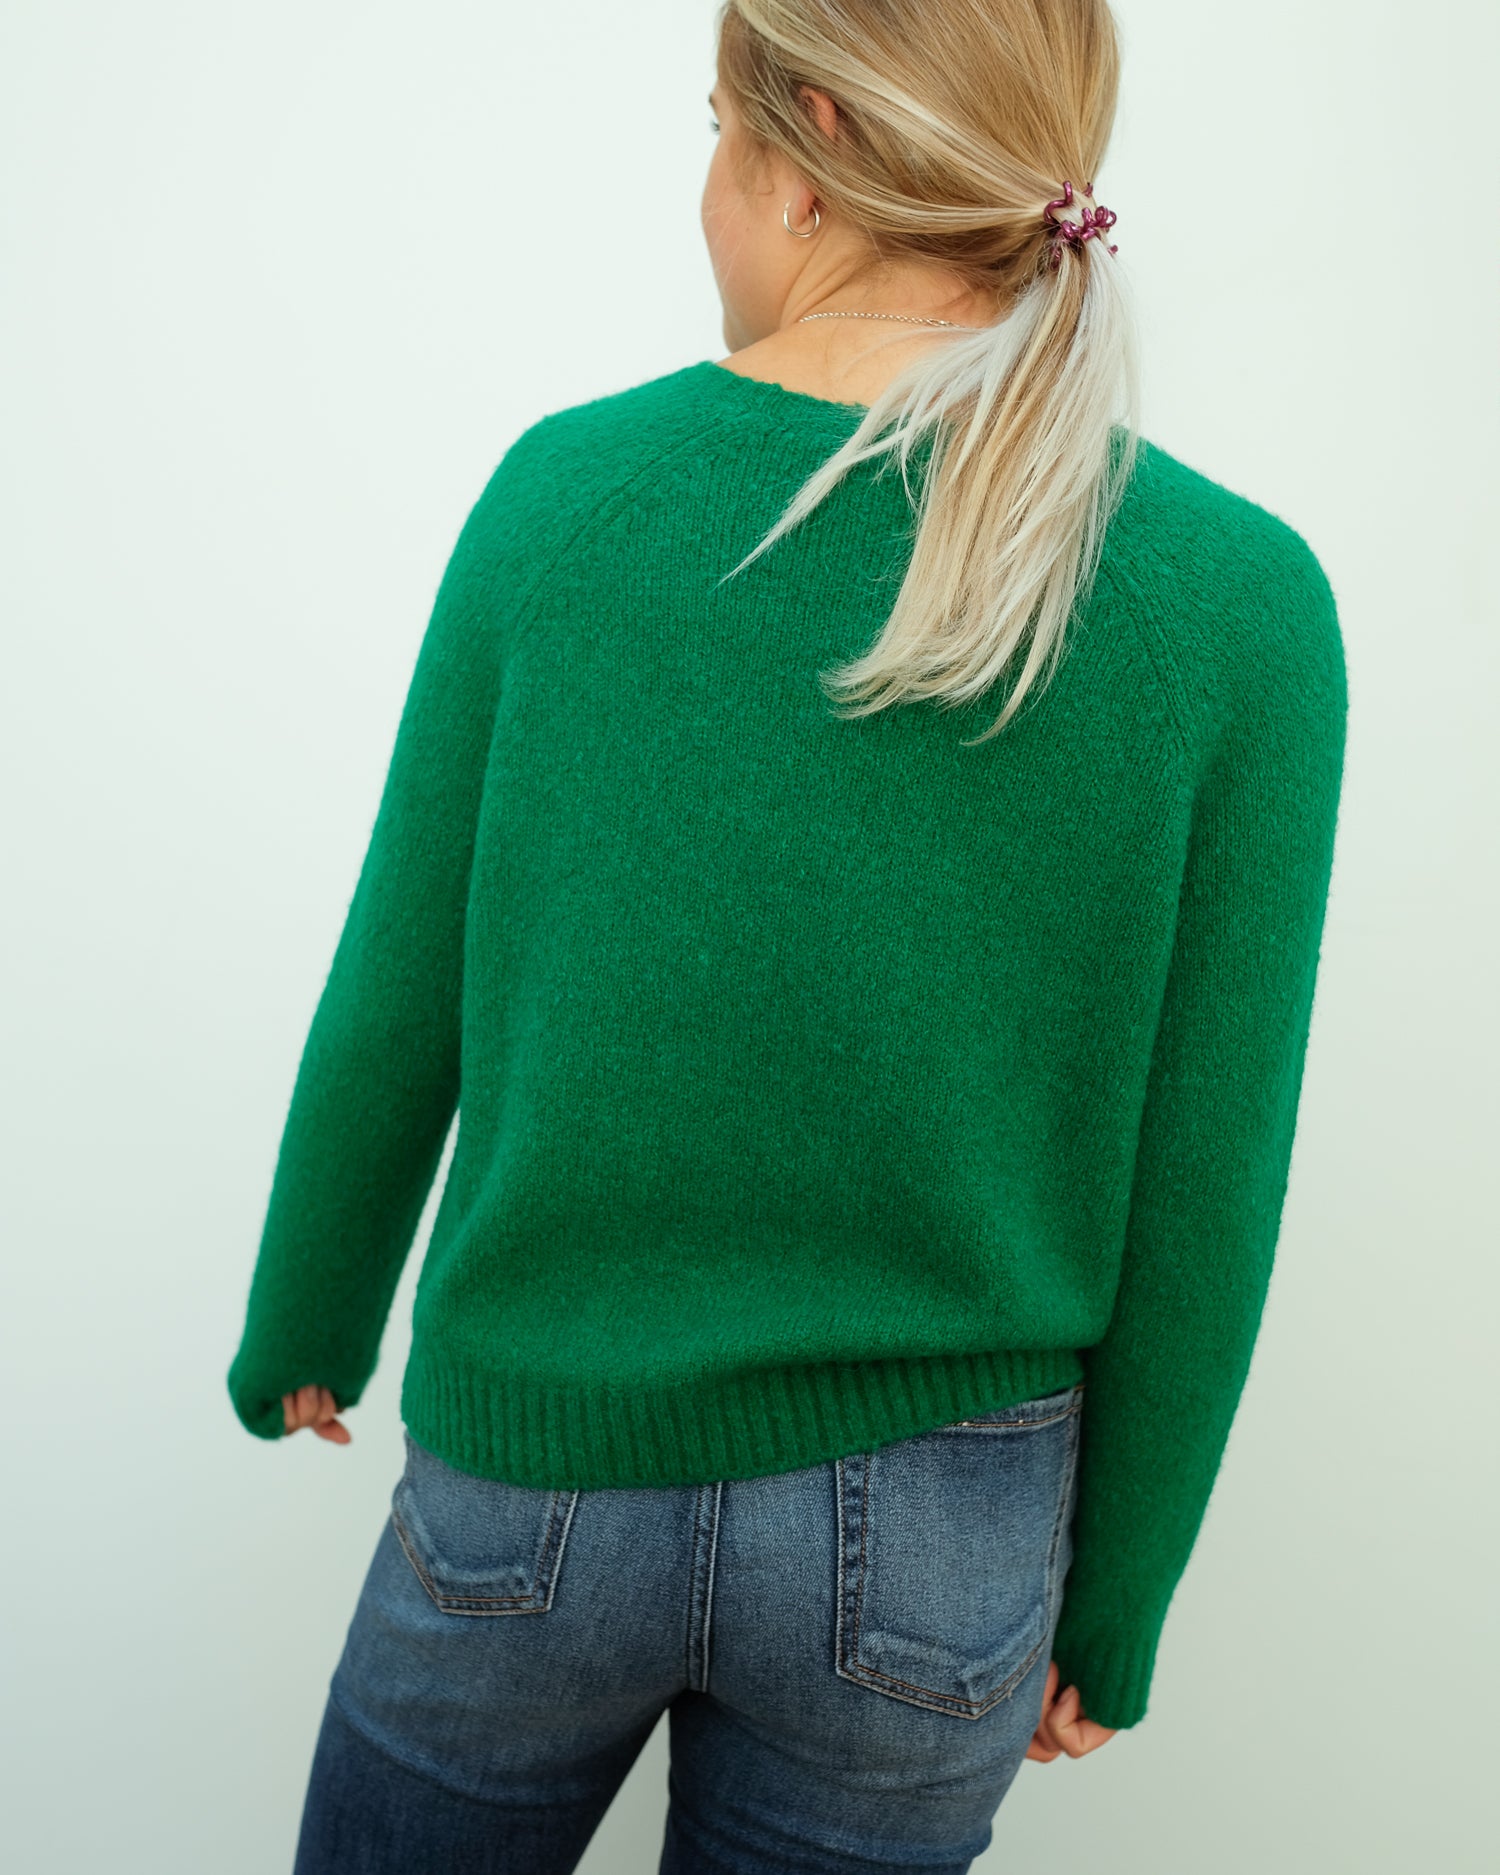 MM Amici knit in smeraldo